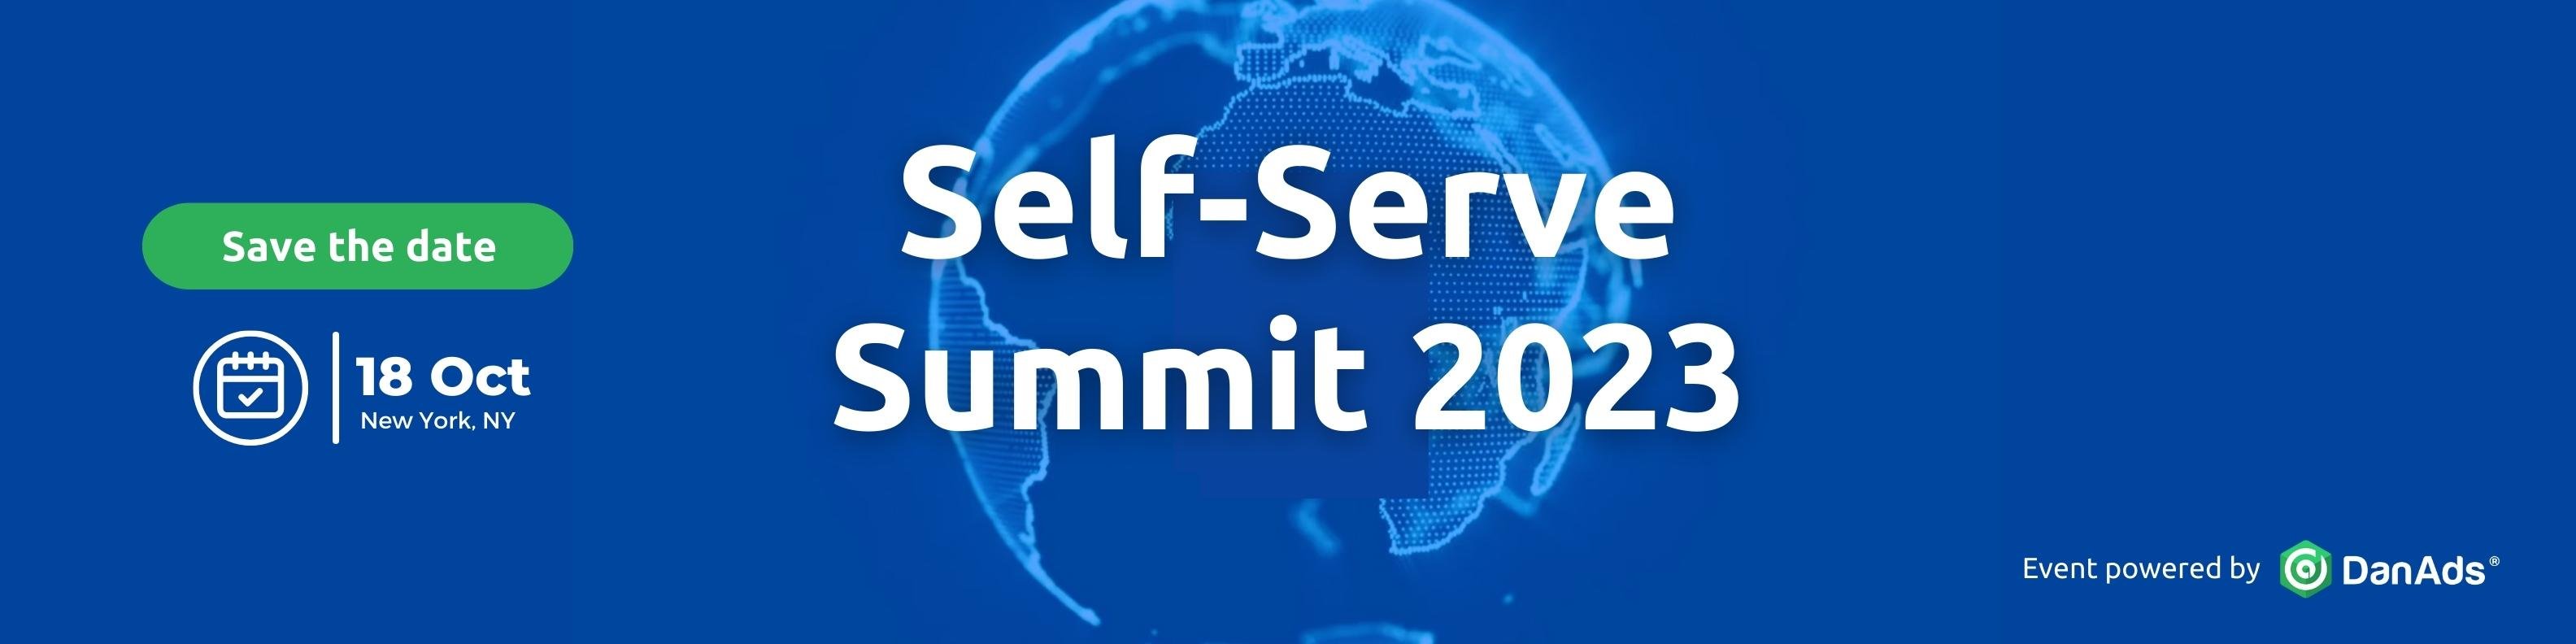 Banner self serve summit 2023